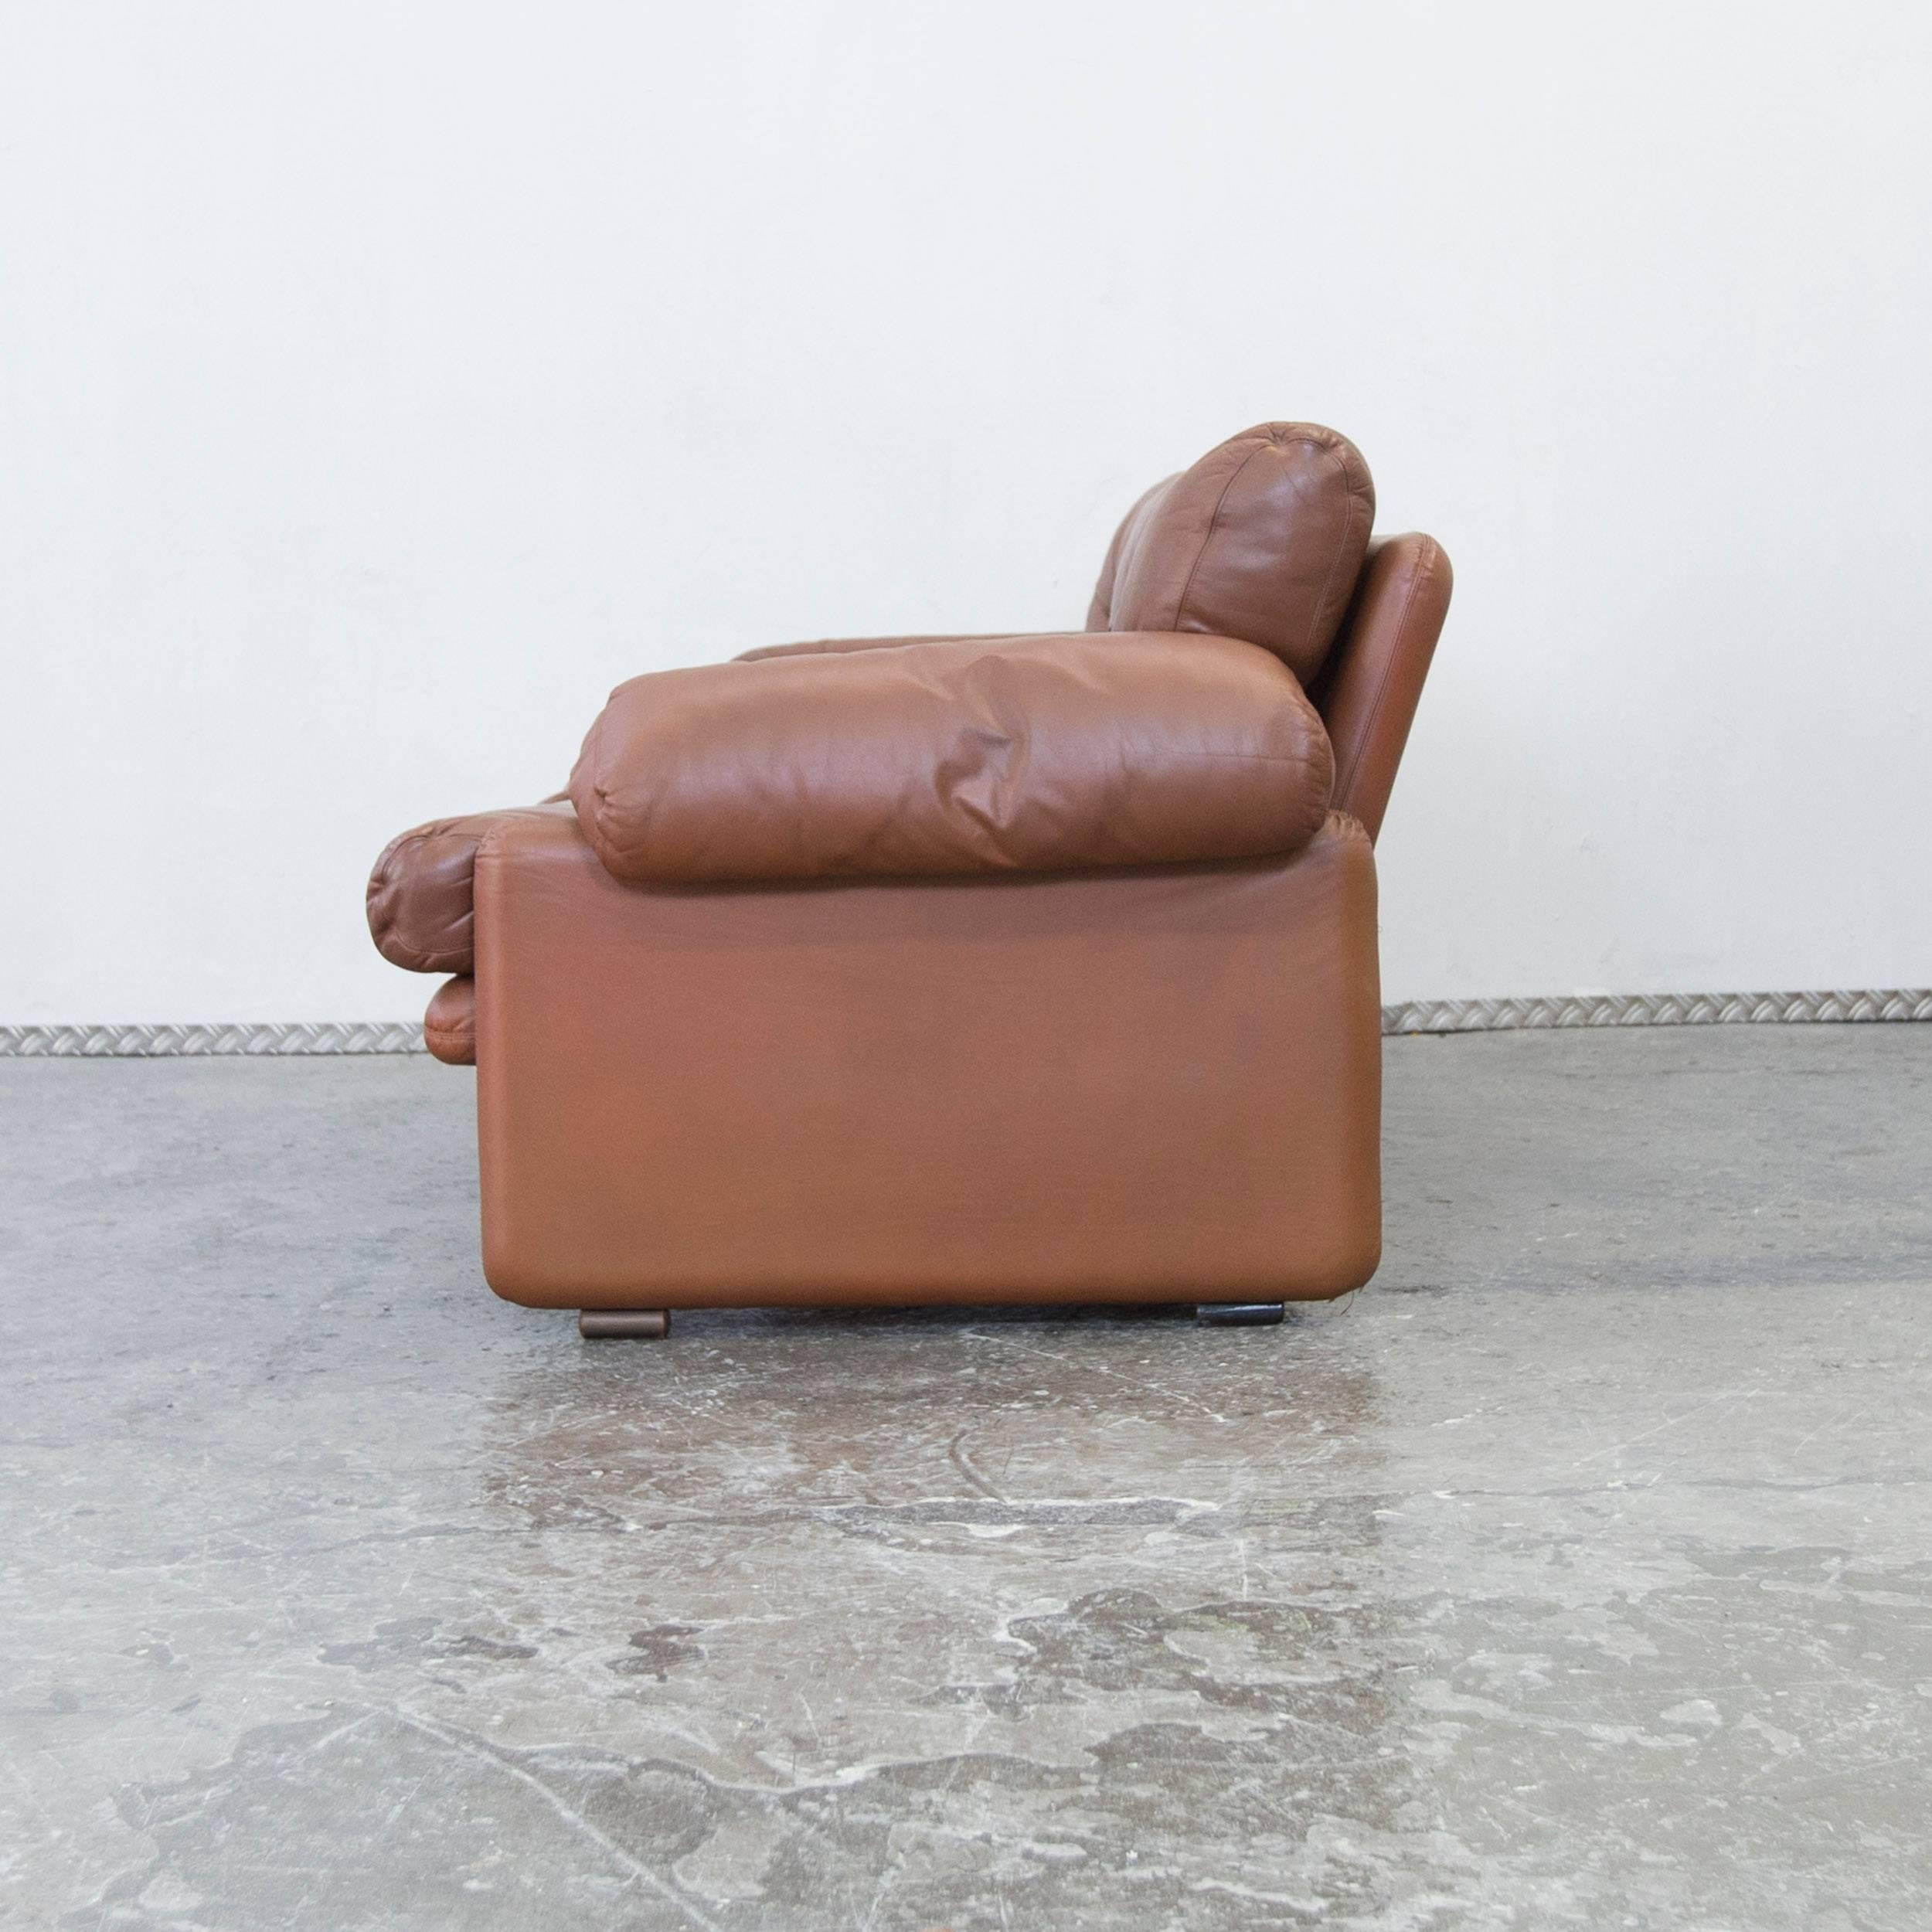 C&B Italia Coronado Fine Leather Two-Seat Sofa by Tobia Scarpa Couch Brown 4